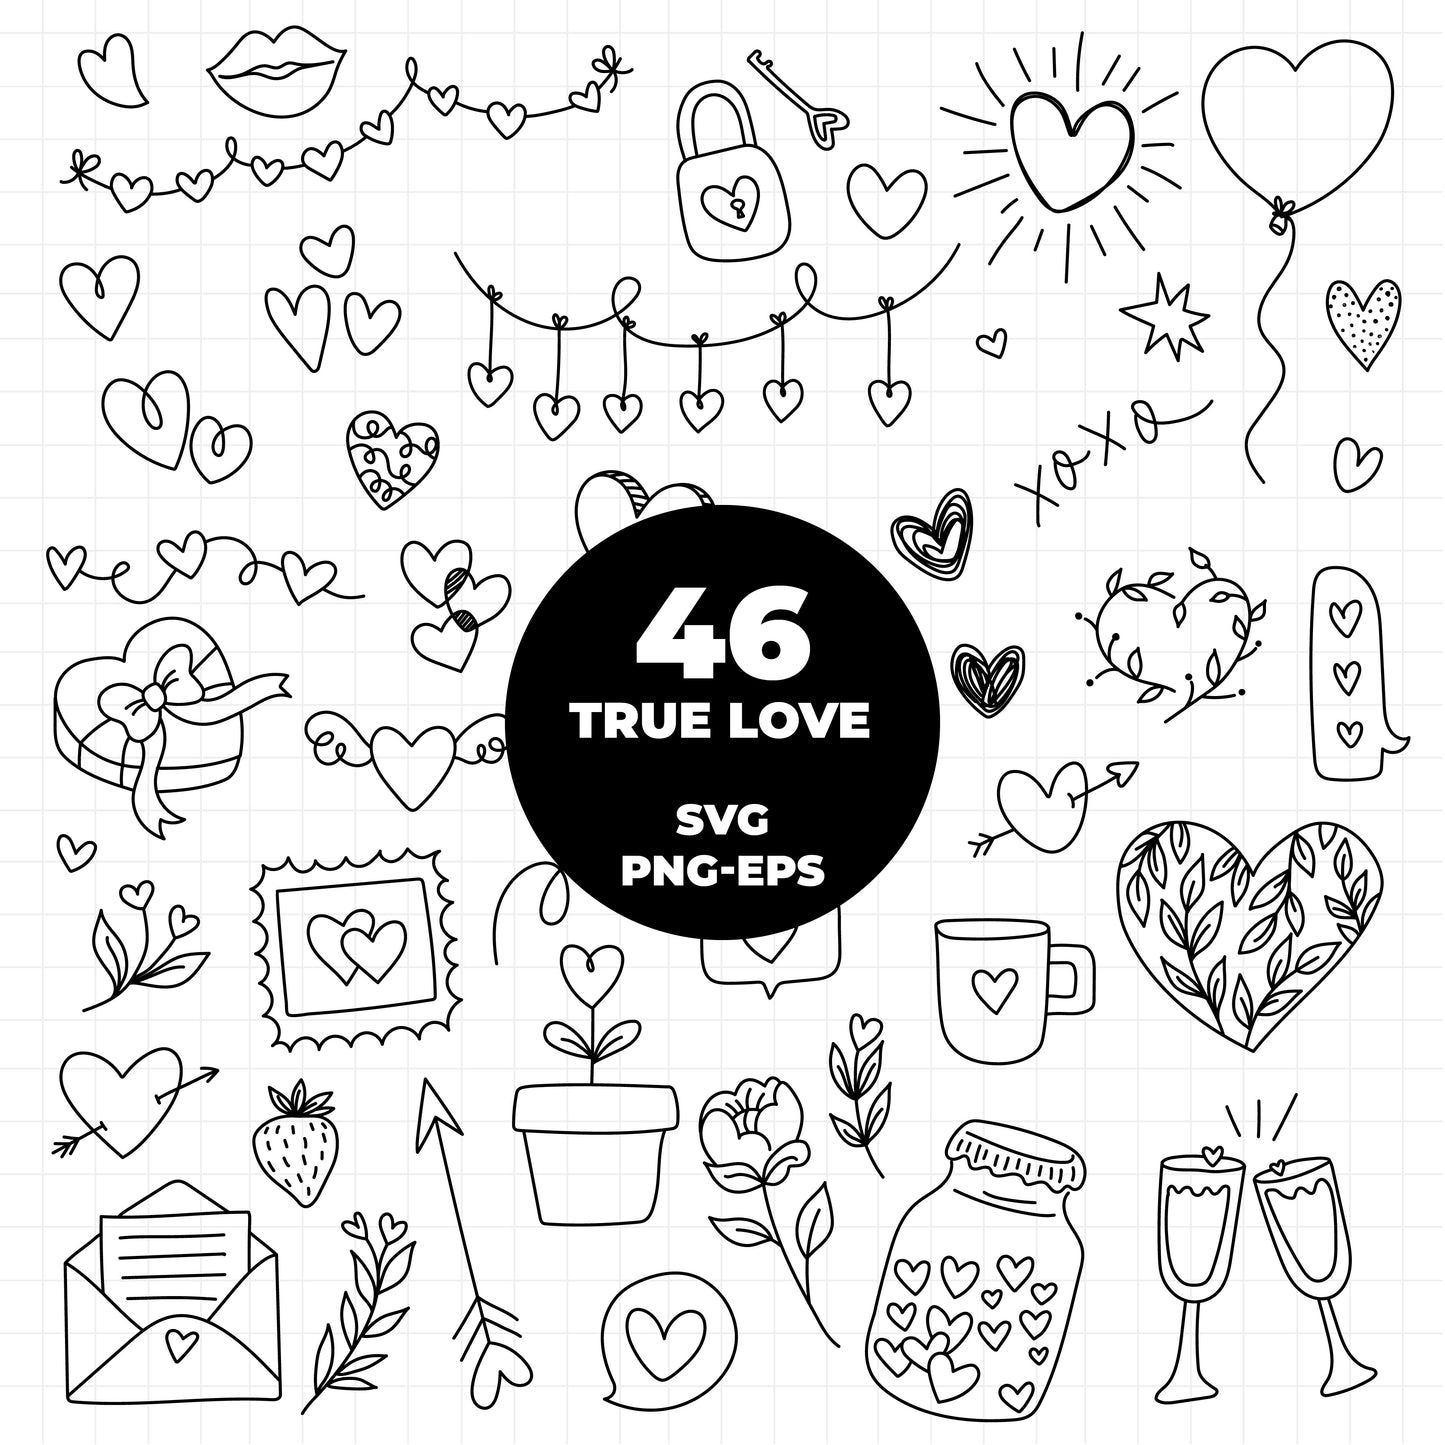 COD1012- Doodle Heart svg, Self Love Svg, Heart svg, Hand-drawn svg, True love svg